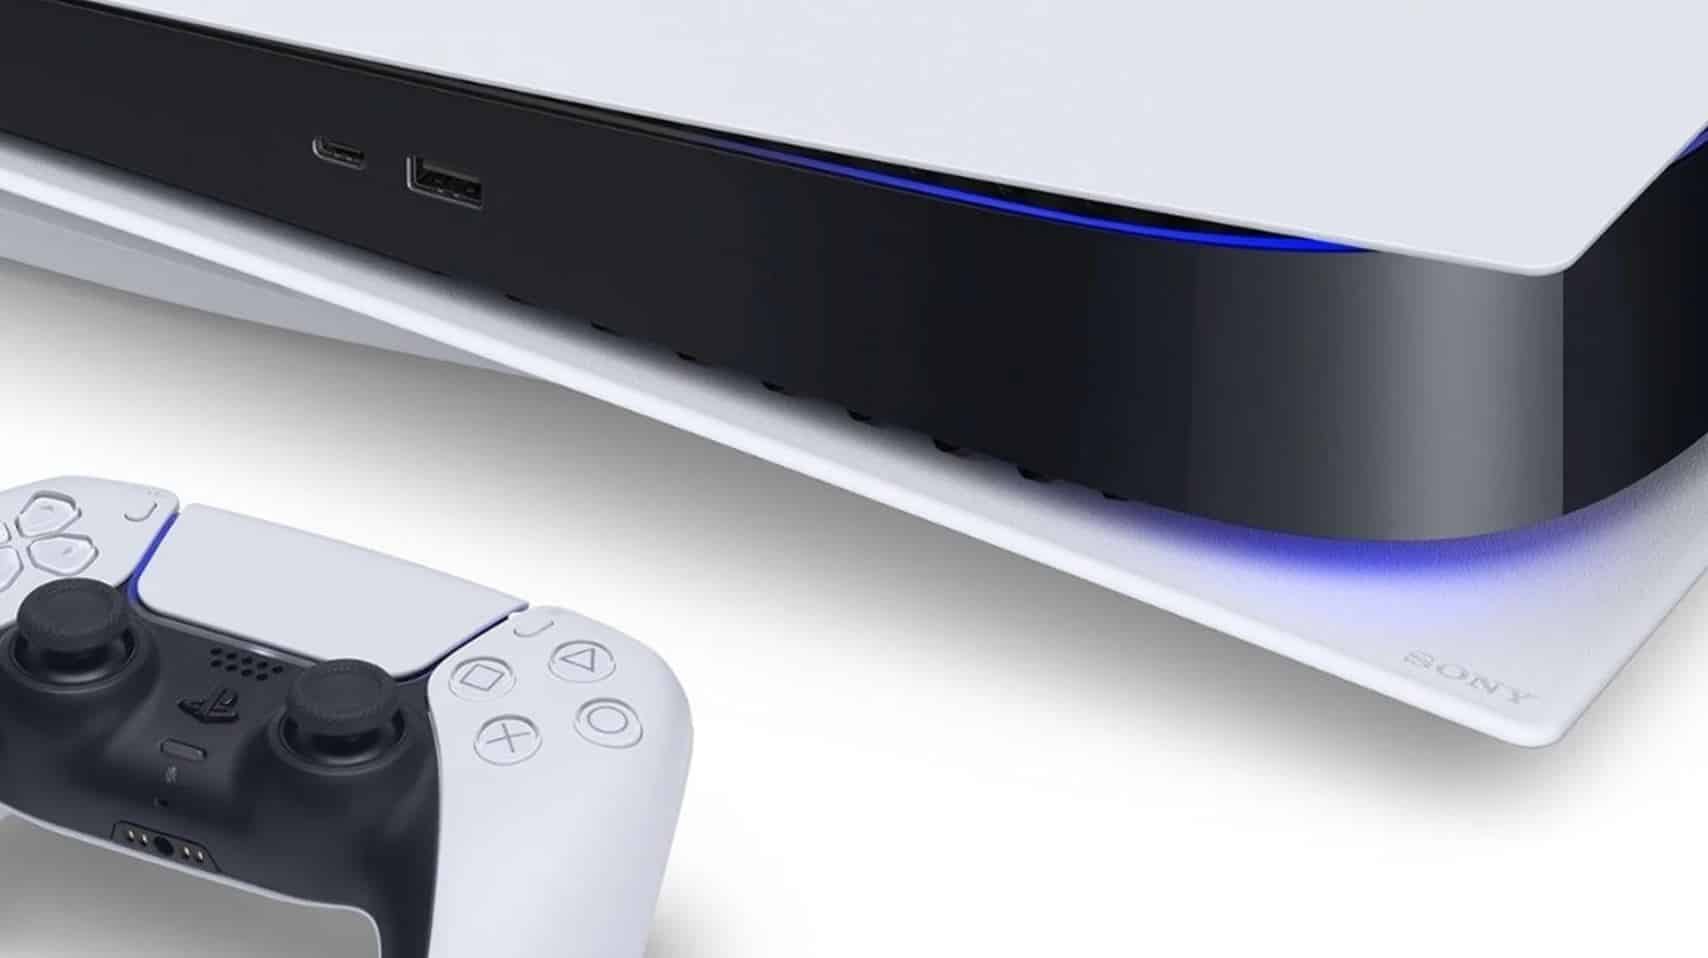 A PlayStation Portugal anunciou evento de lançamento da PS5